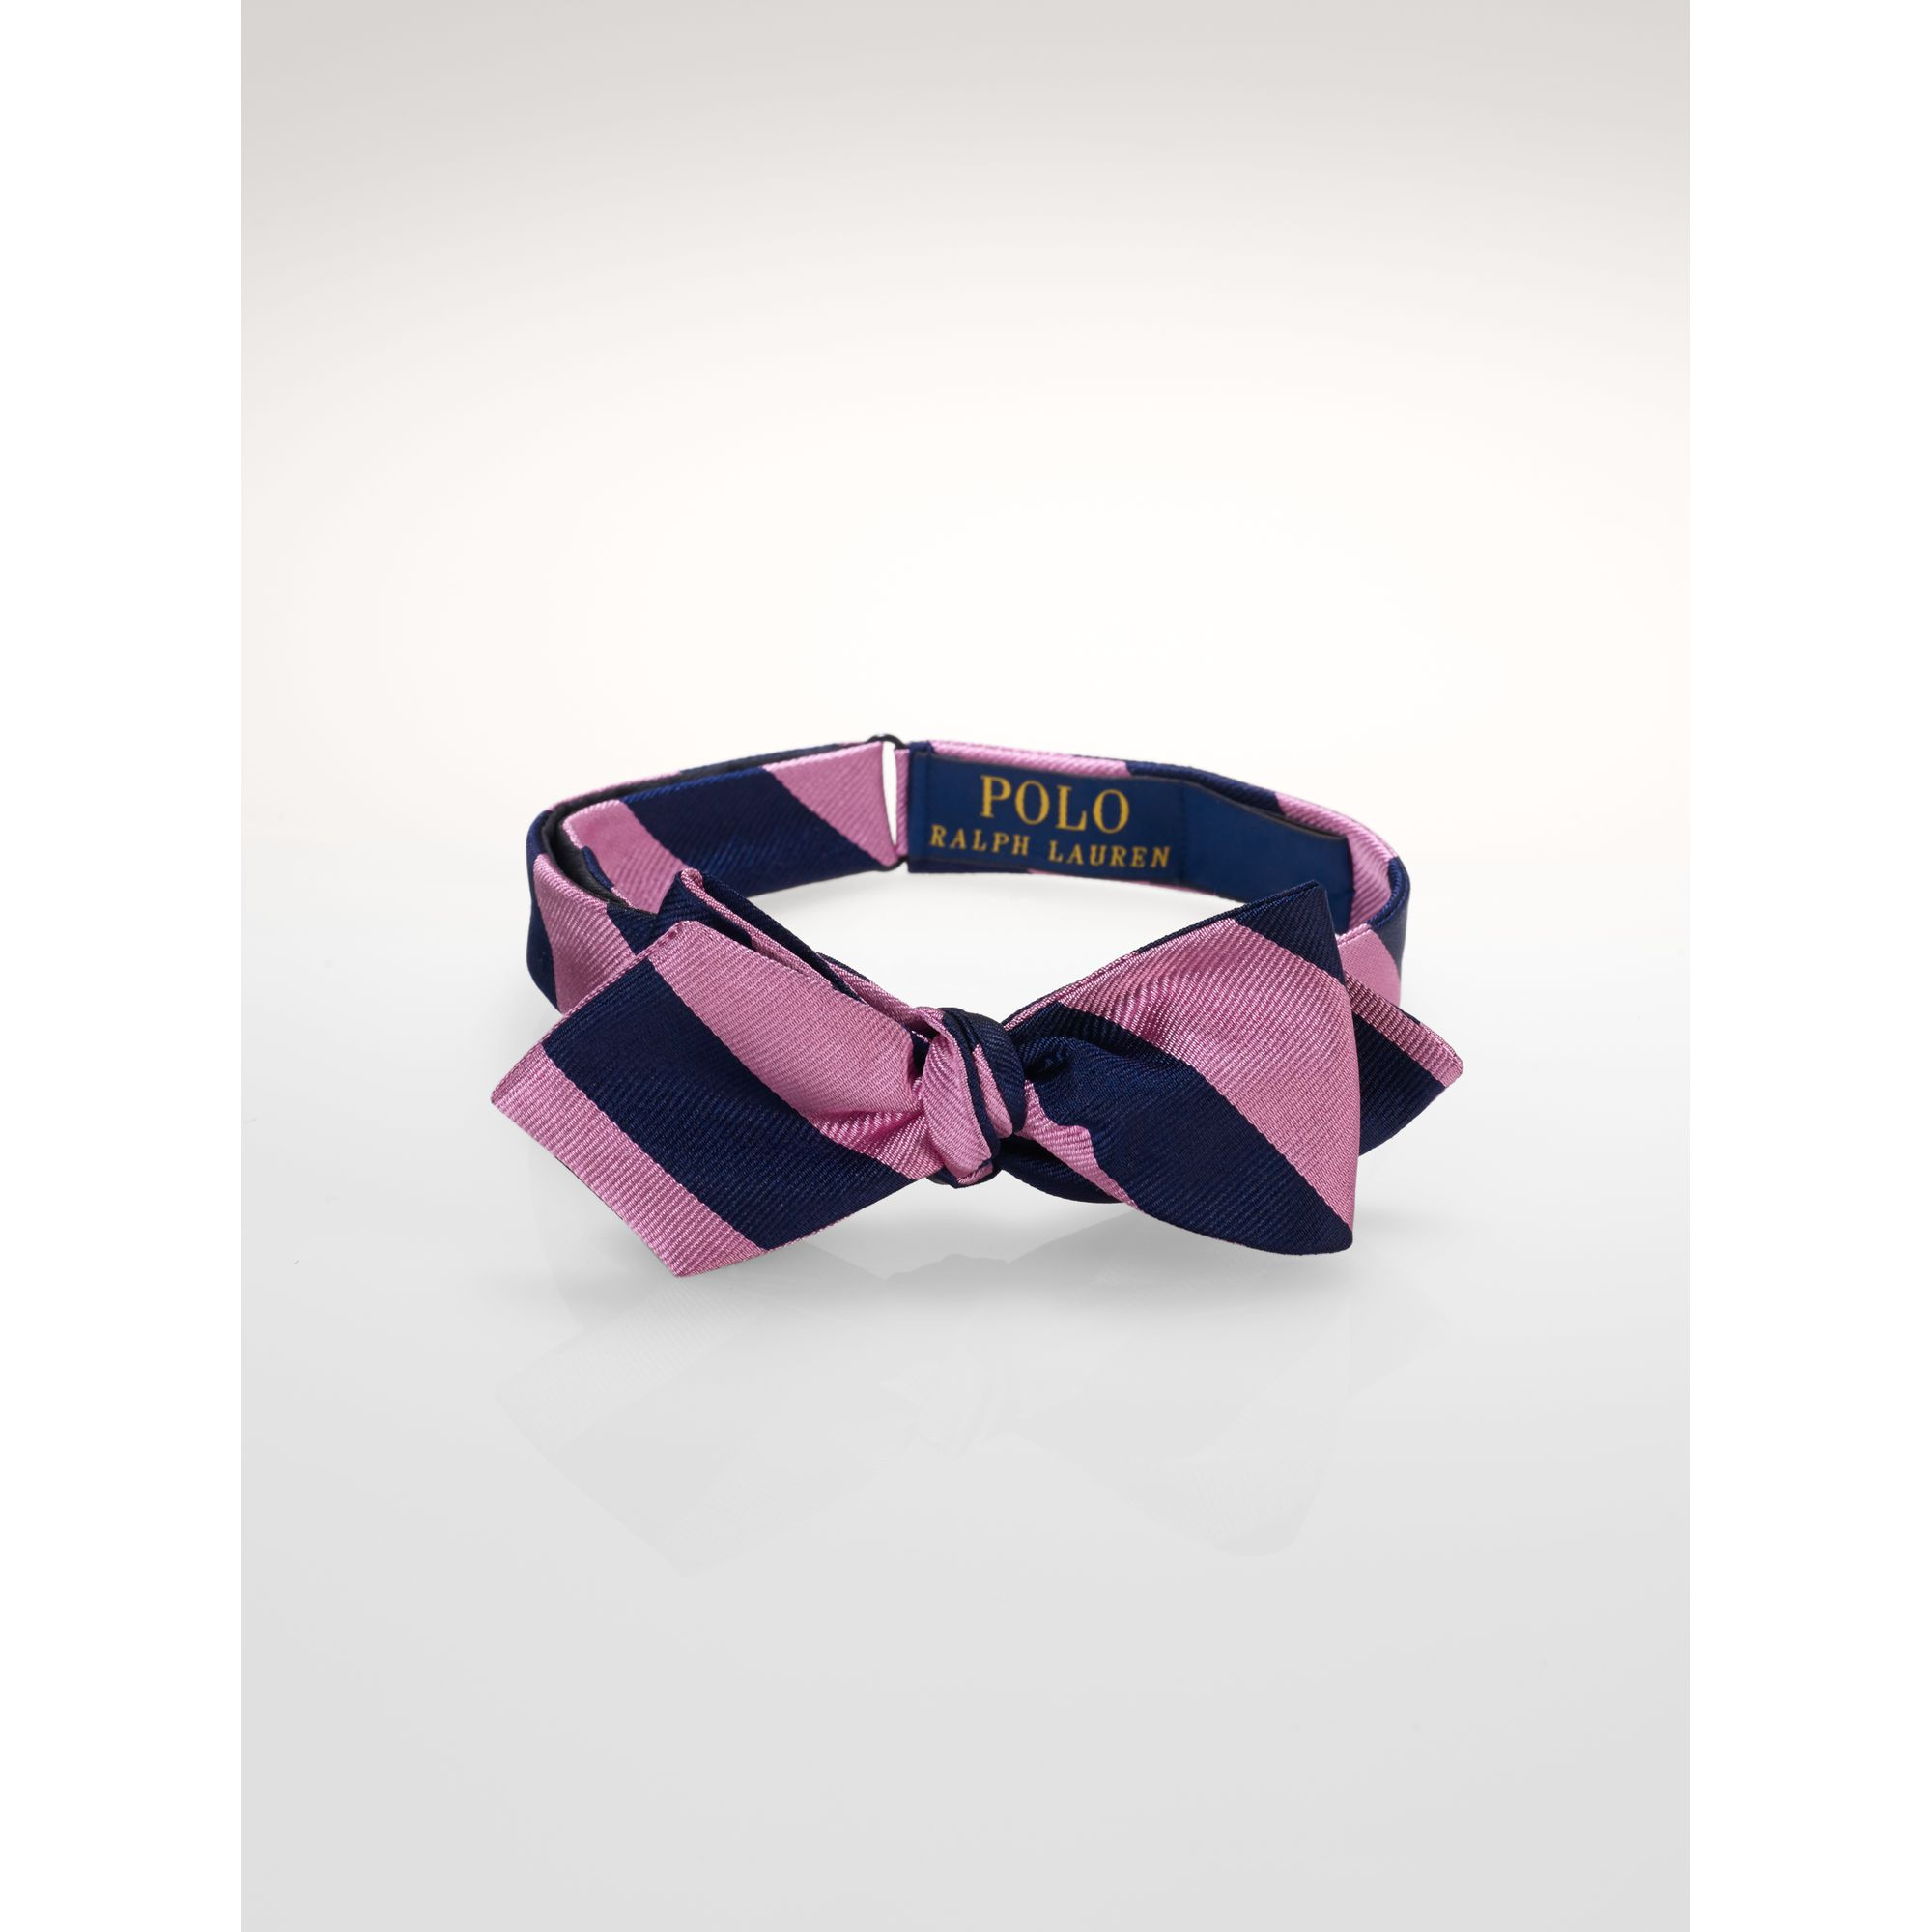 polo ralph lauren bow ties